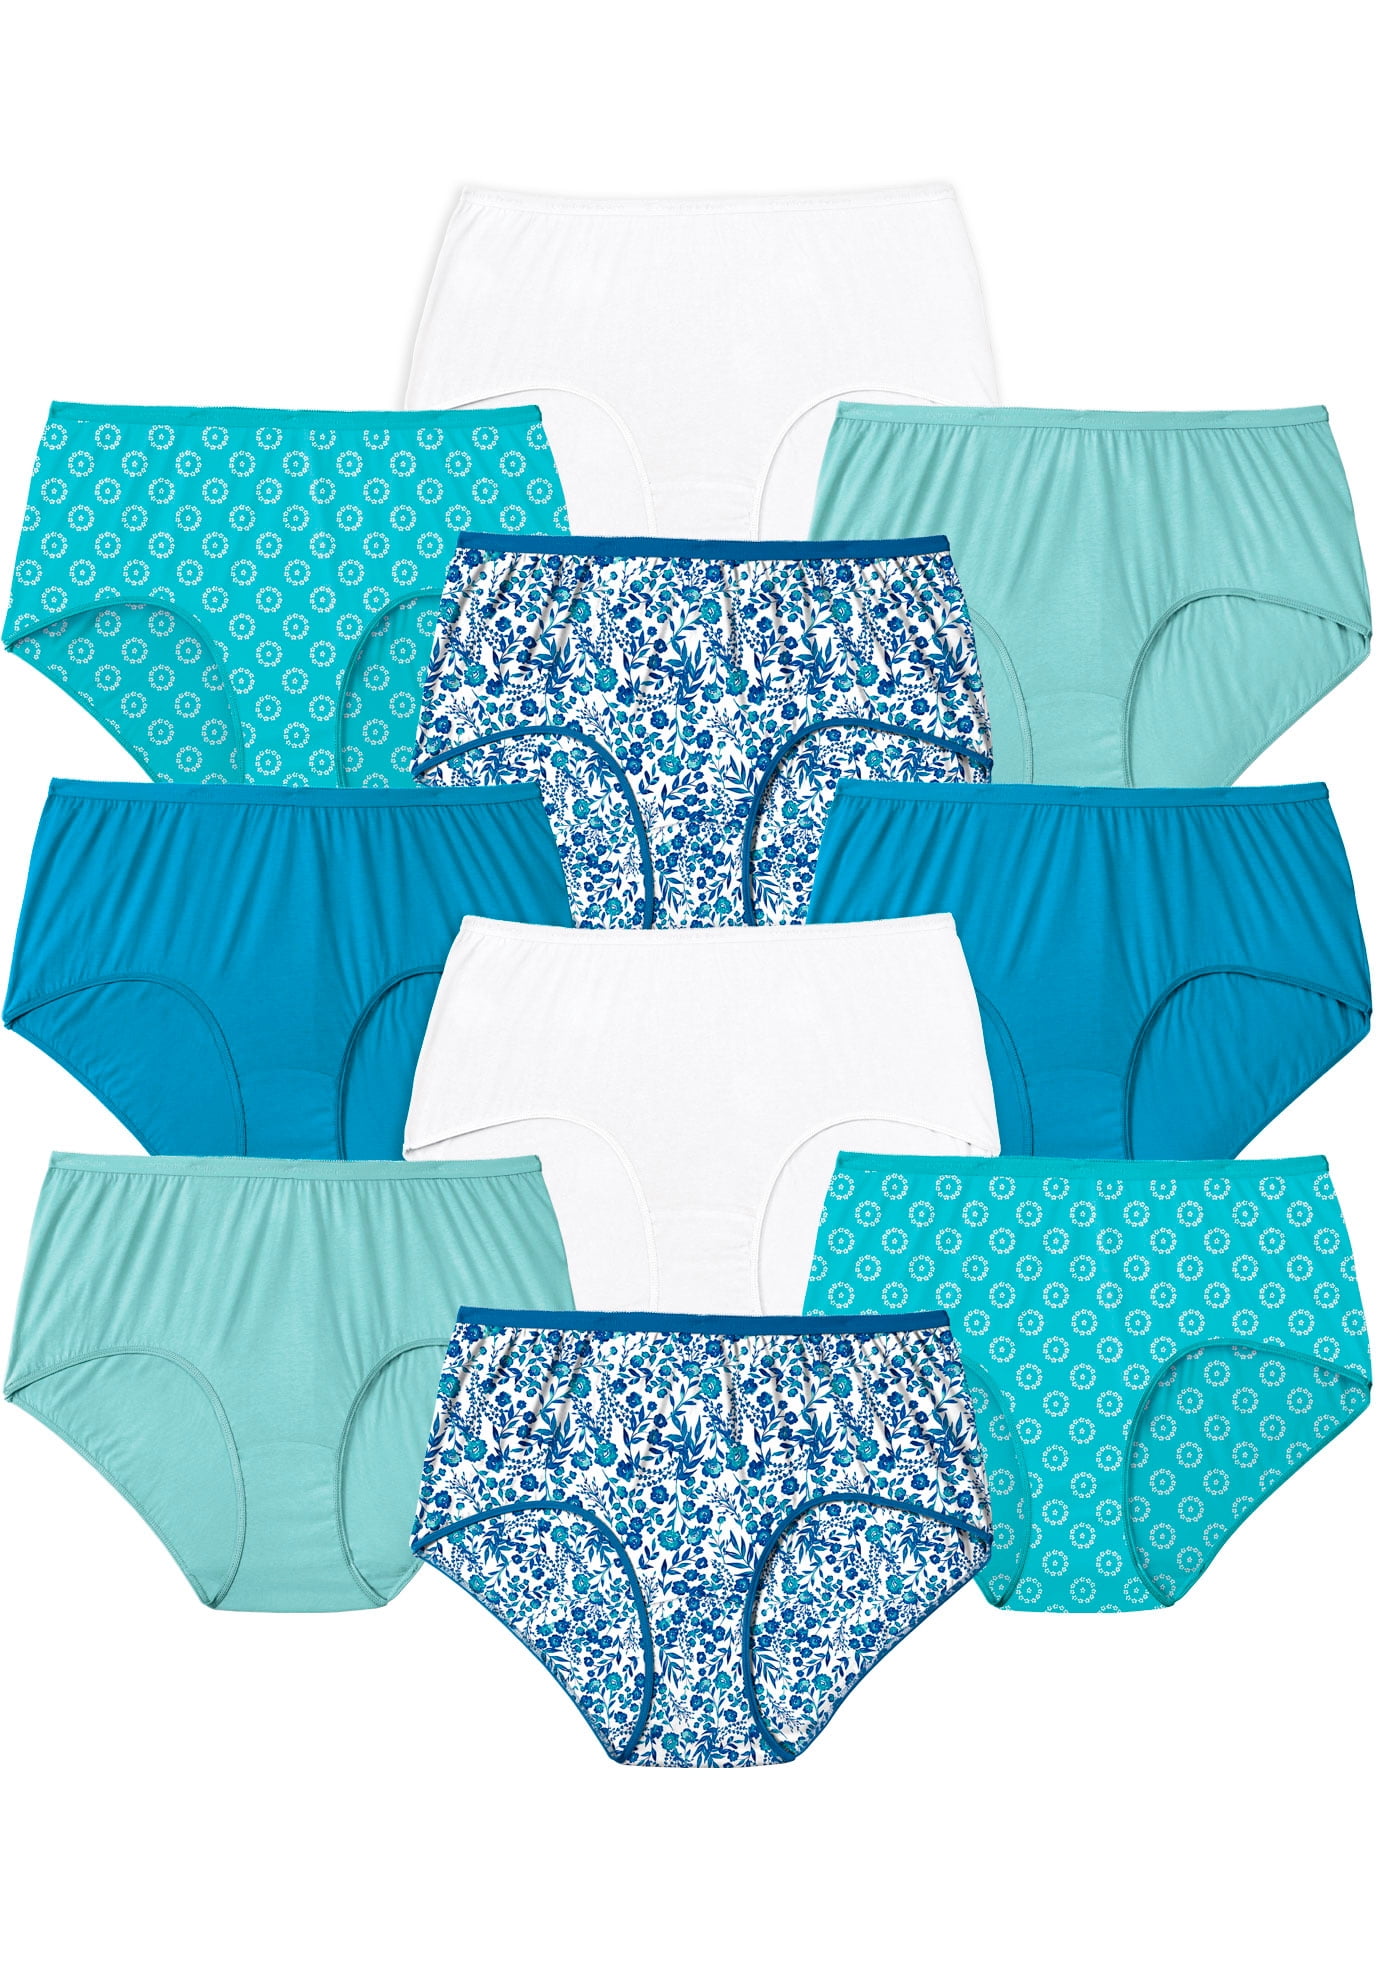 Details about   Hanes Premium Women 8 Pairs of Panties 9 2X 16 18 Underpants Cotton Bikini 